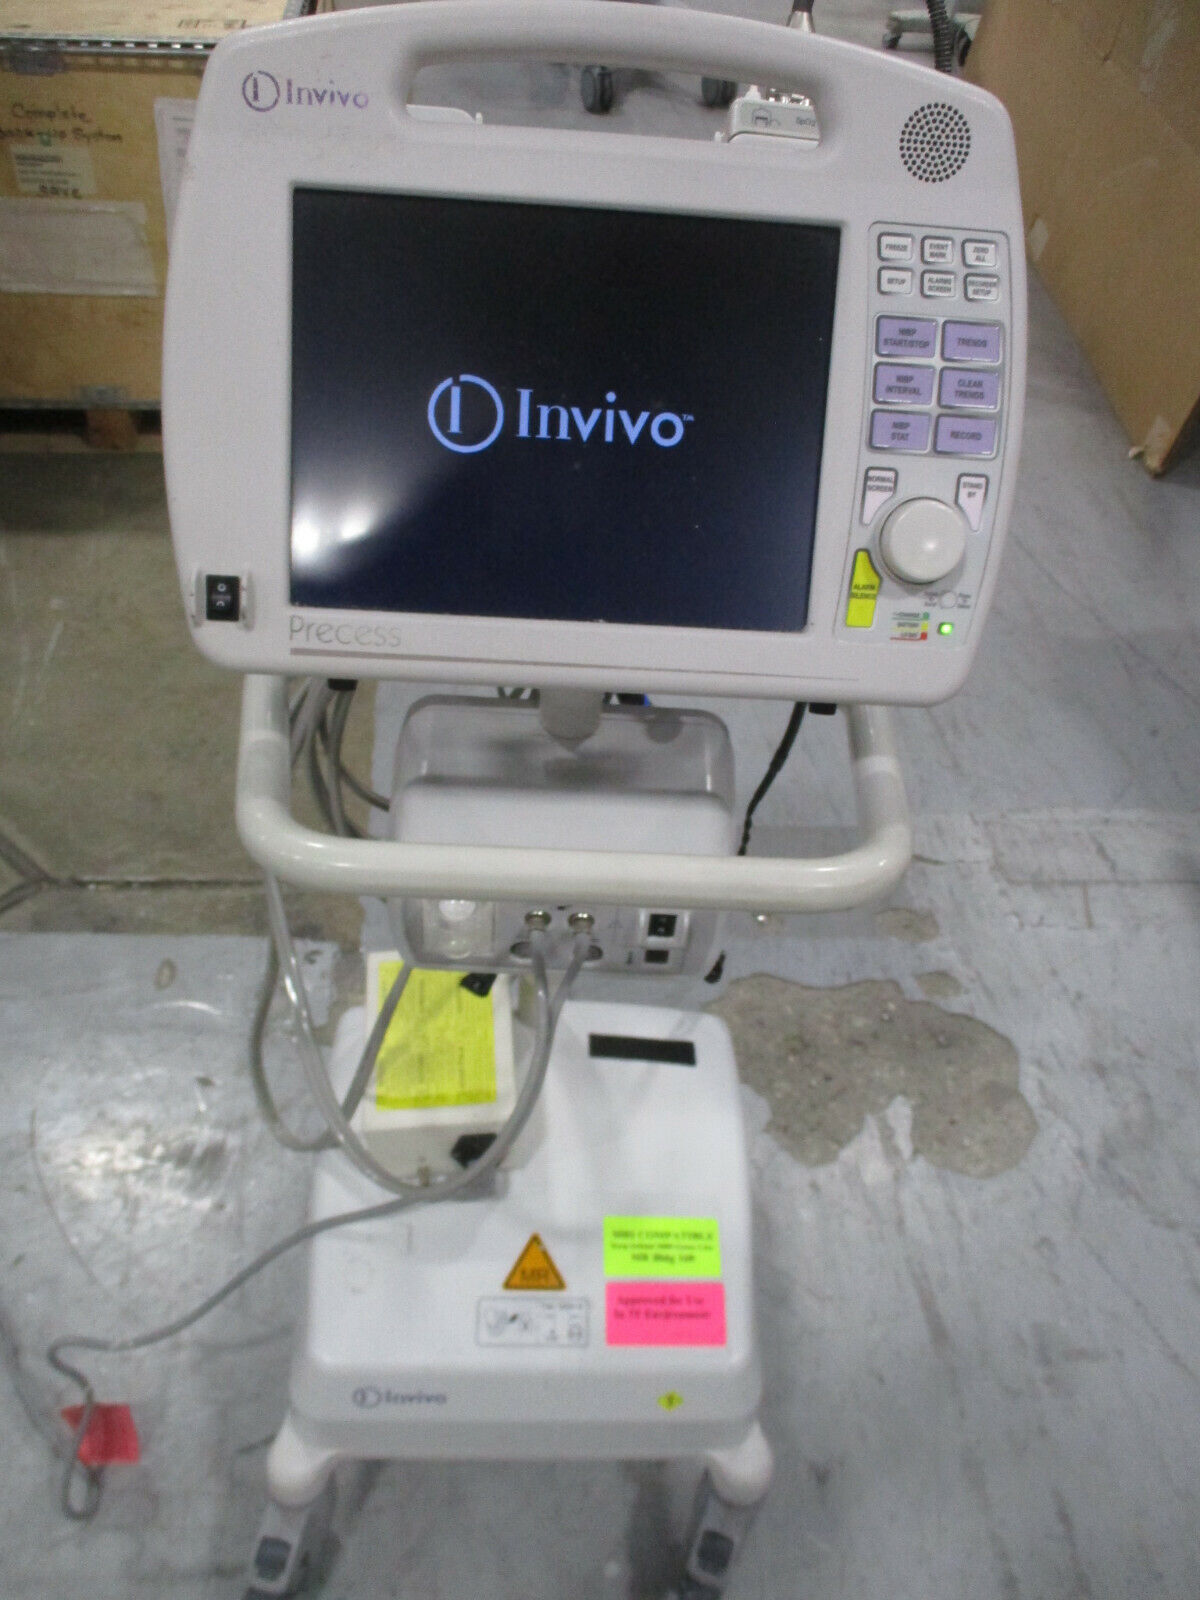 Invivo Precess MRI 3160 Patient Monitor, SpO2 Module